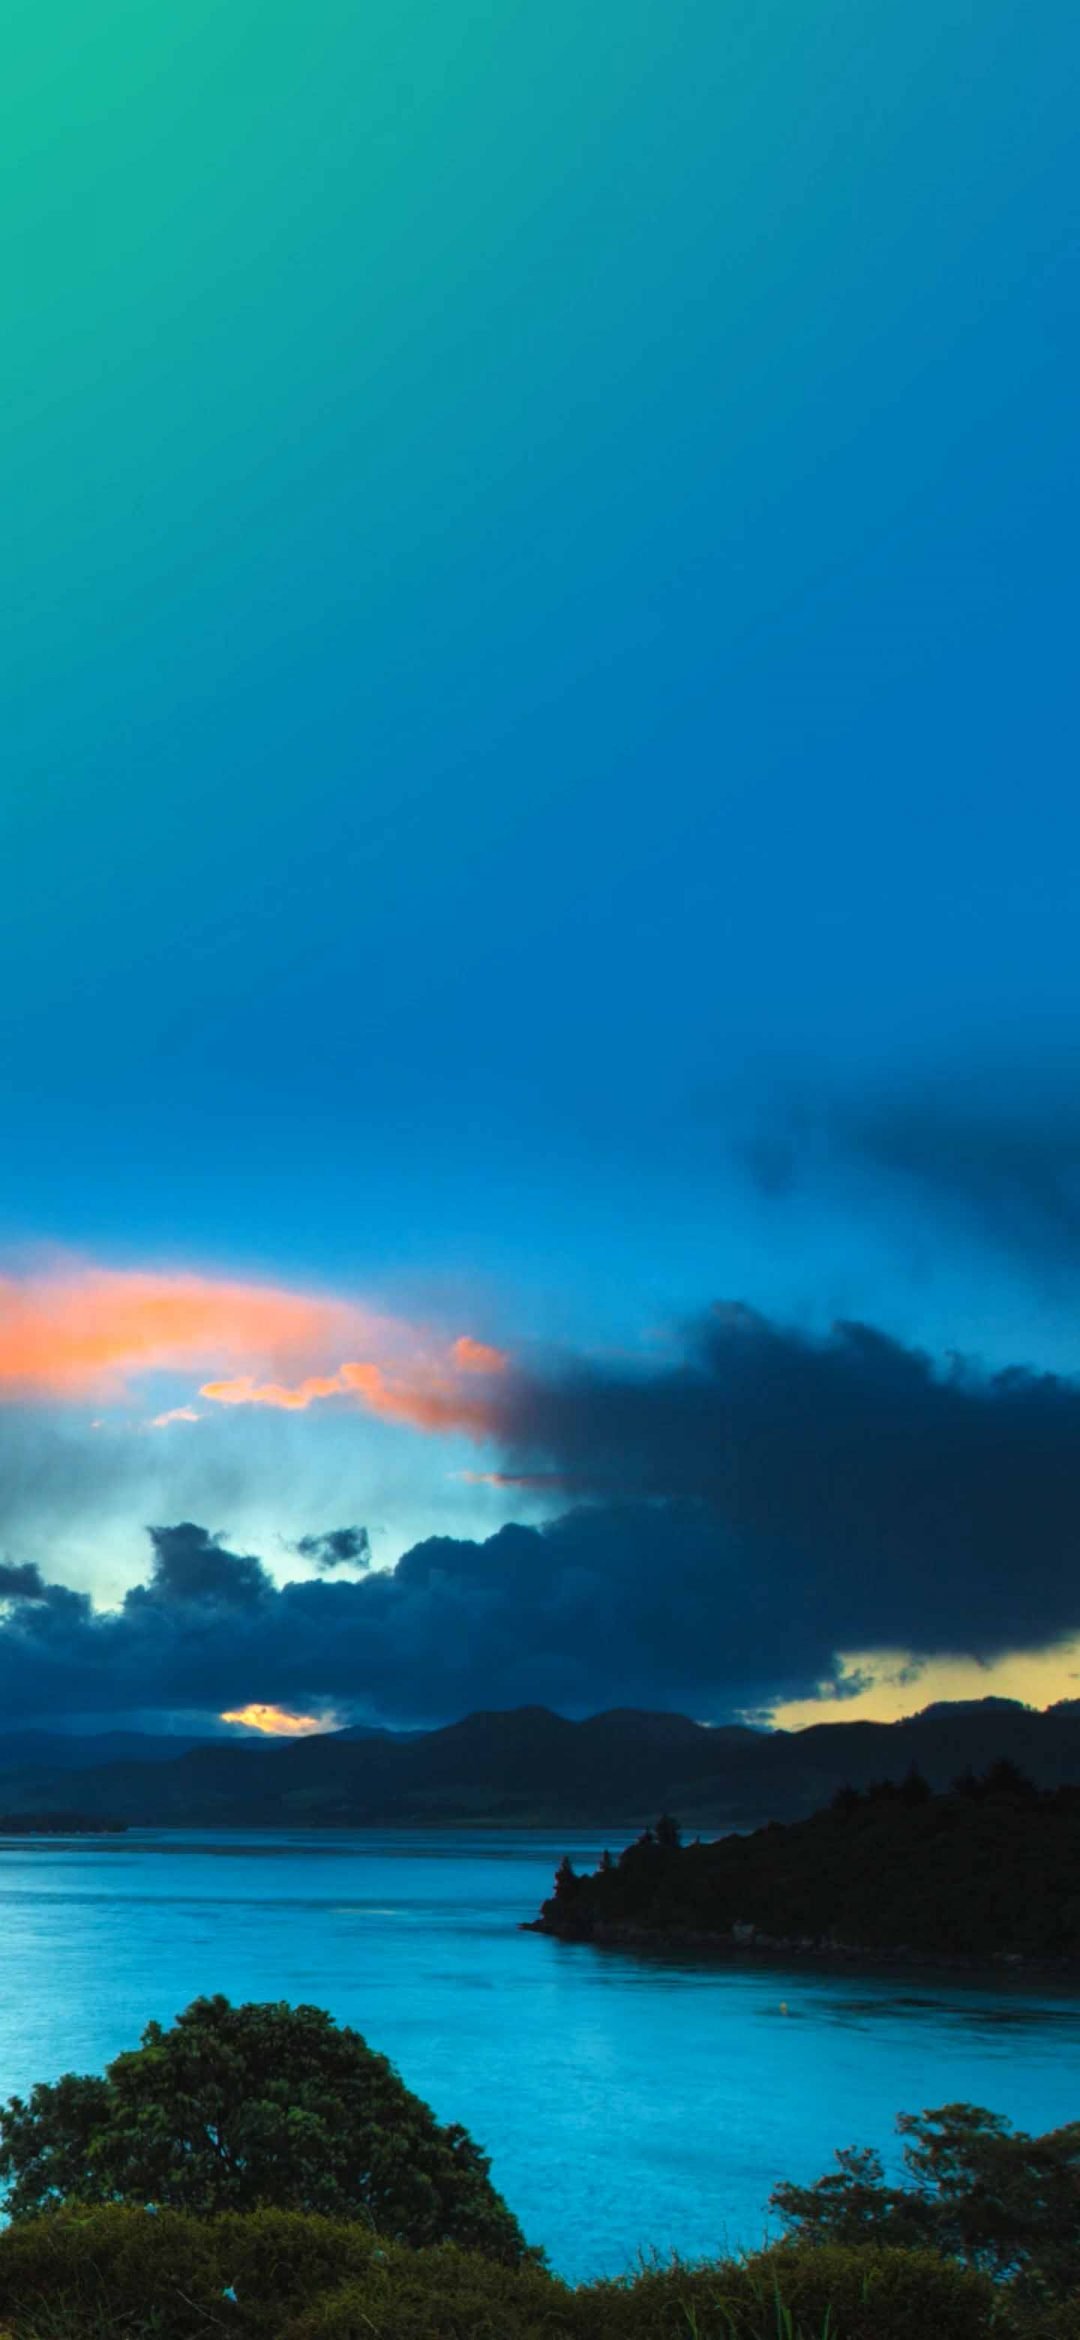 lg 라이브 배경 화면,하늘,수평선,자연,푸른,구름